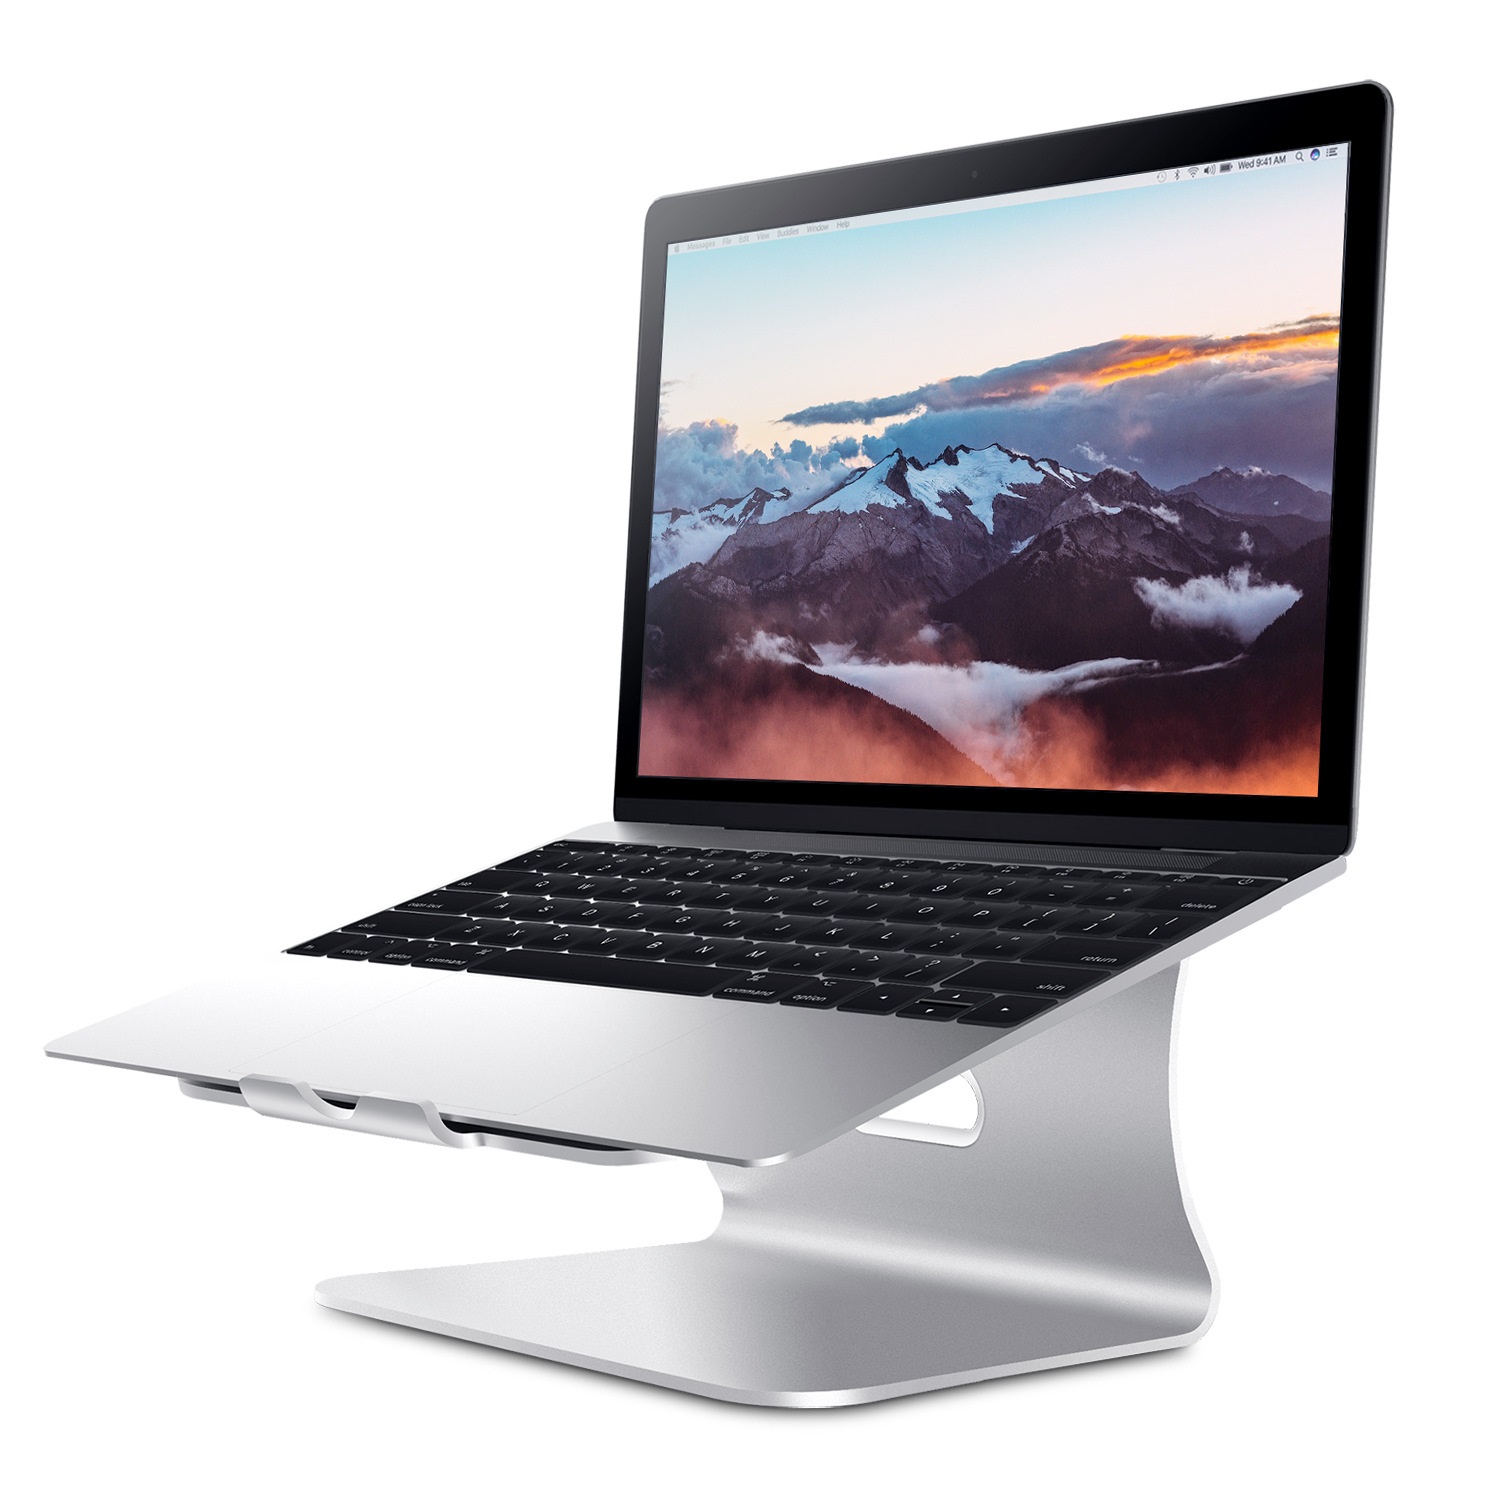 Đế nâng tản nhiệt hợp kim nhôm nguyên khối cho laptop Macbook Vu Studio - Hàng chính hãng 1